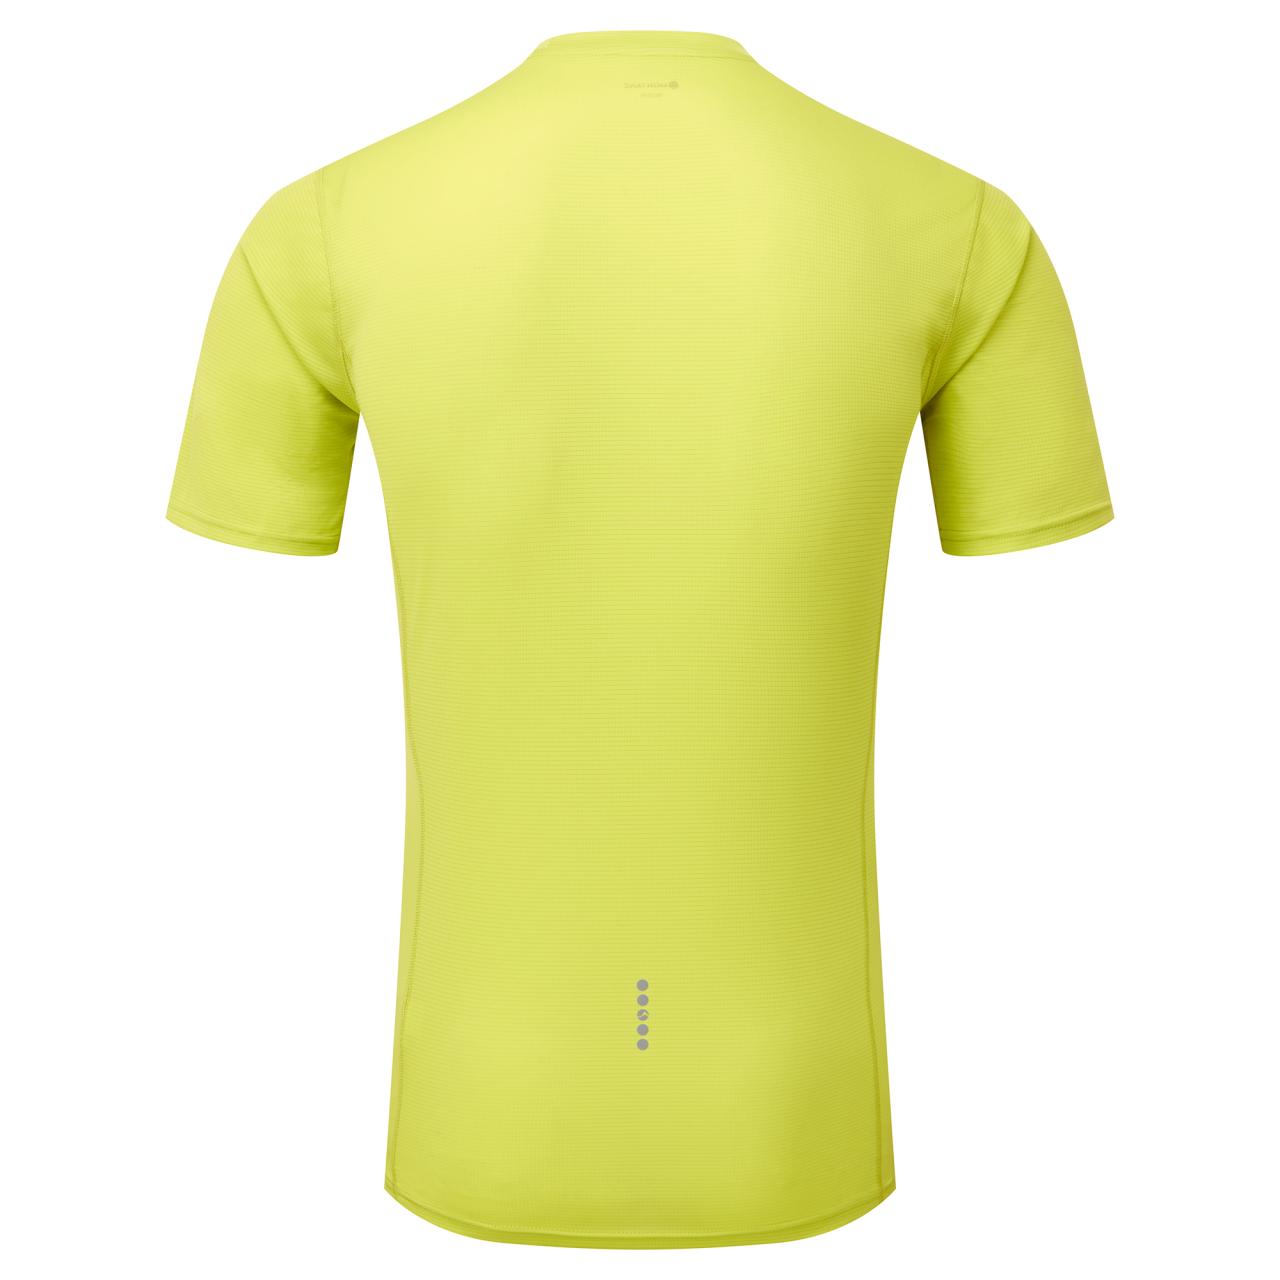 DART NANO T-SHIRT-CITRUS SPRING-XL pánské triko žlutozelené